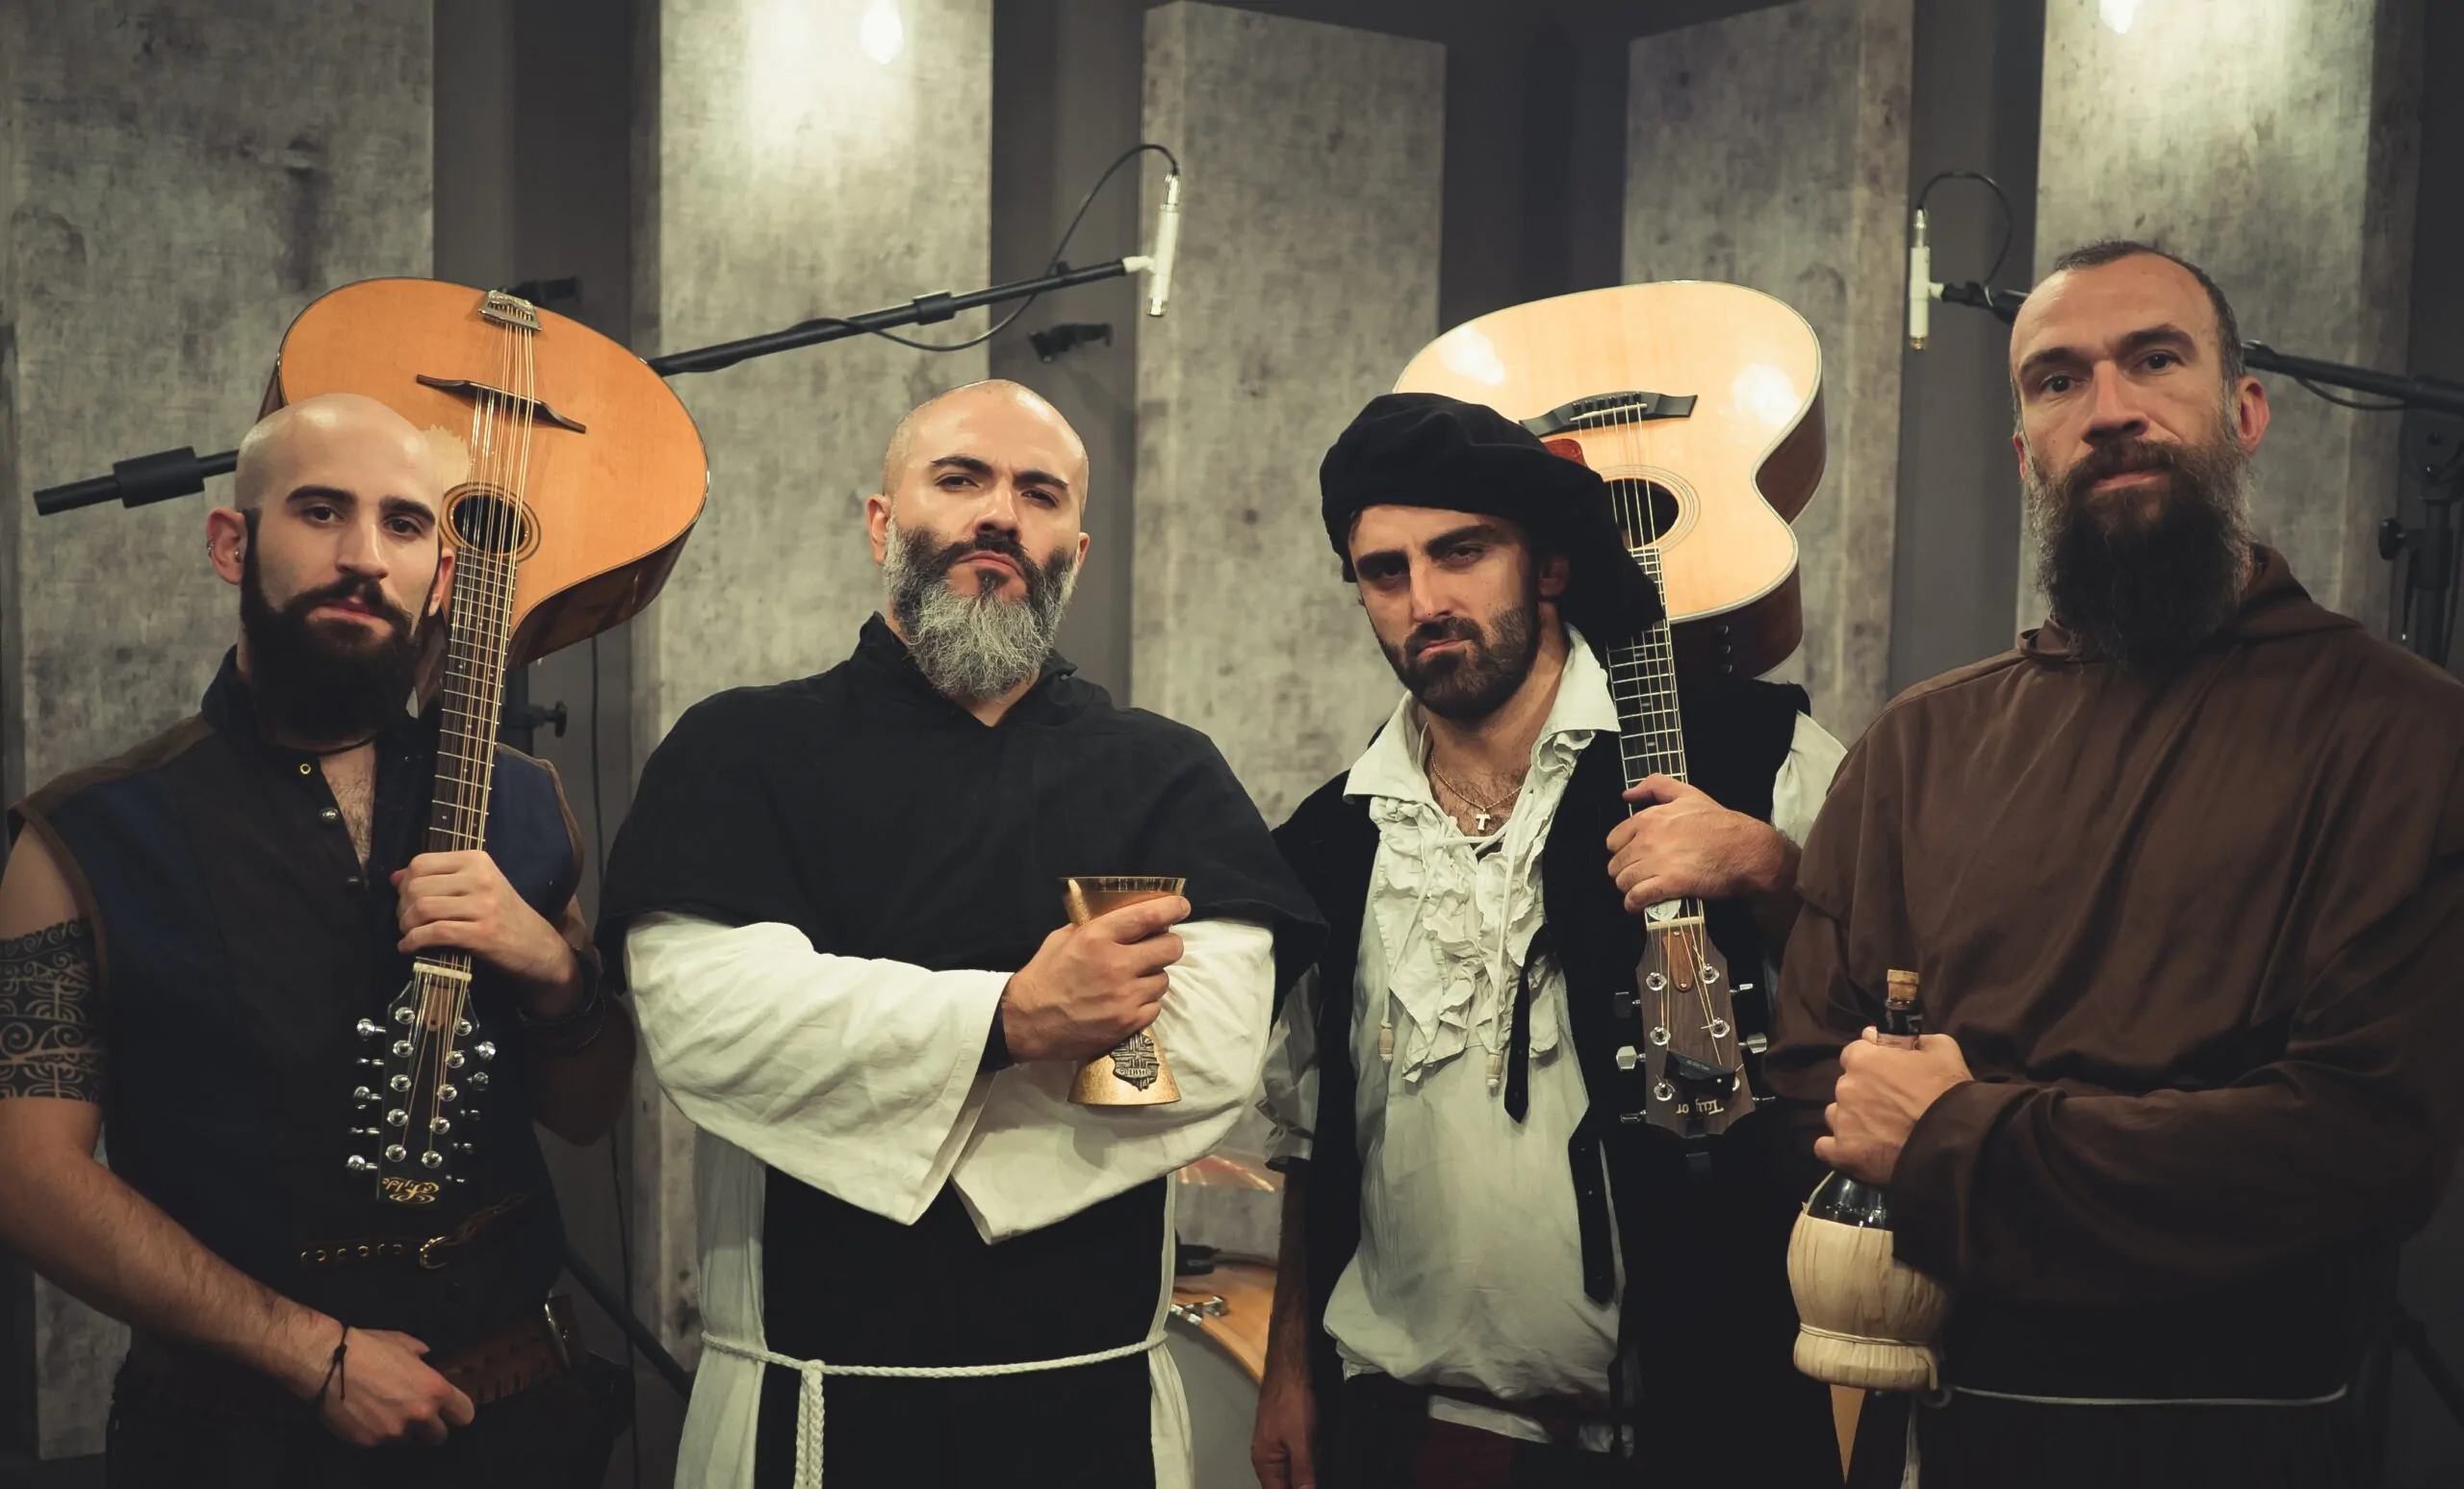 BARDOMAGNO – giovedì 2 giugno al Druso di Ranica (BG) l’irriverente folk rock band di Feudalesimo e Libertà